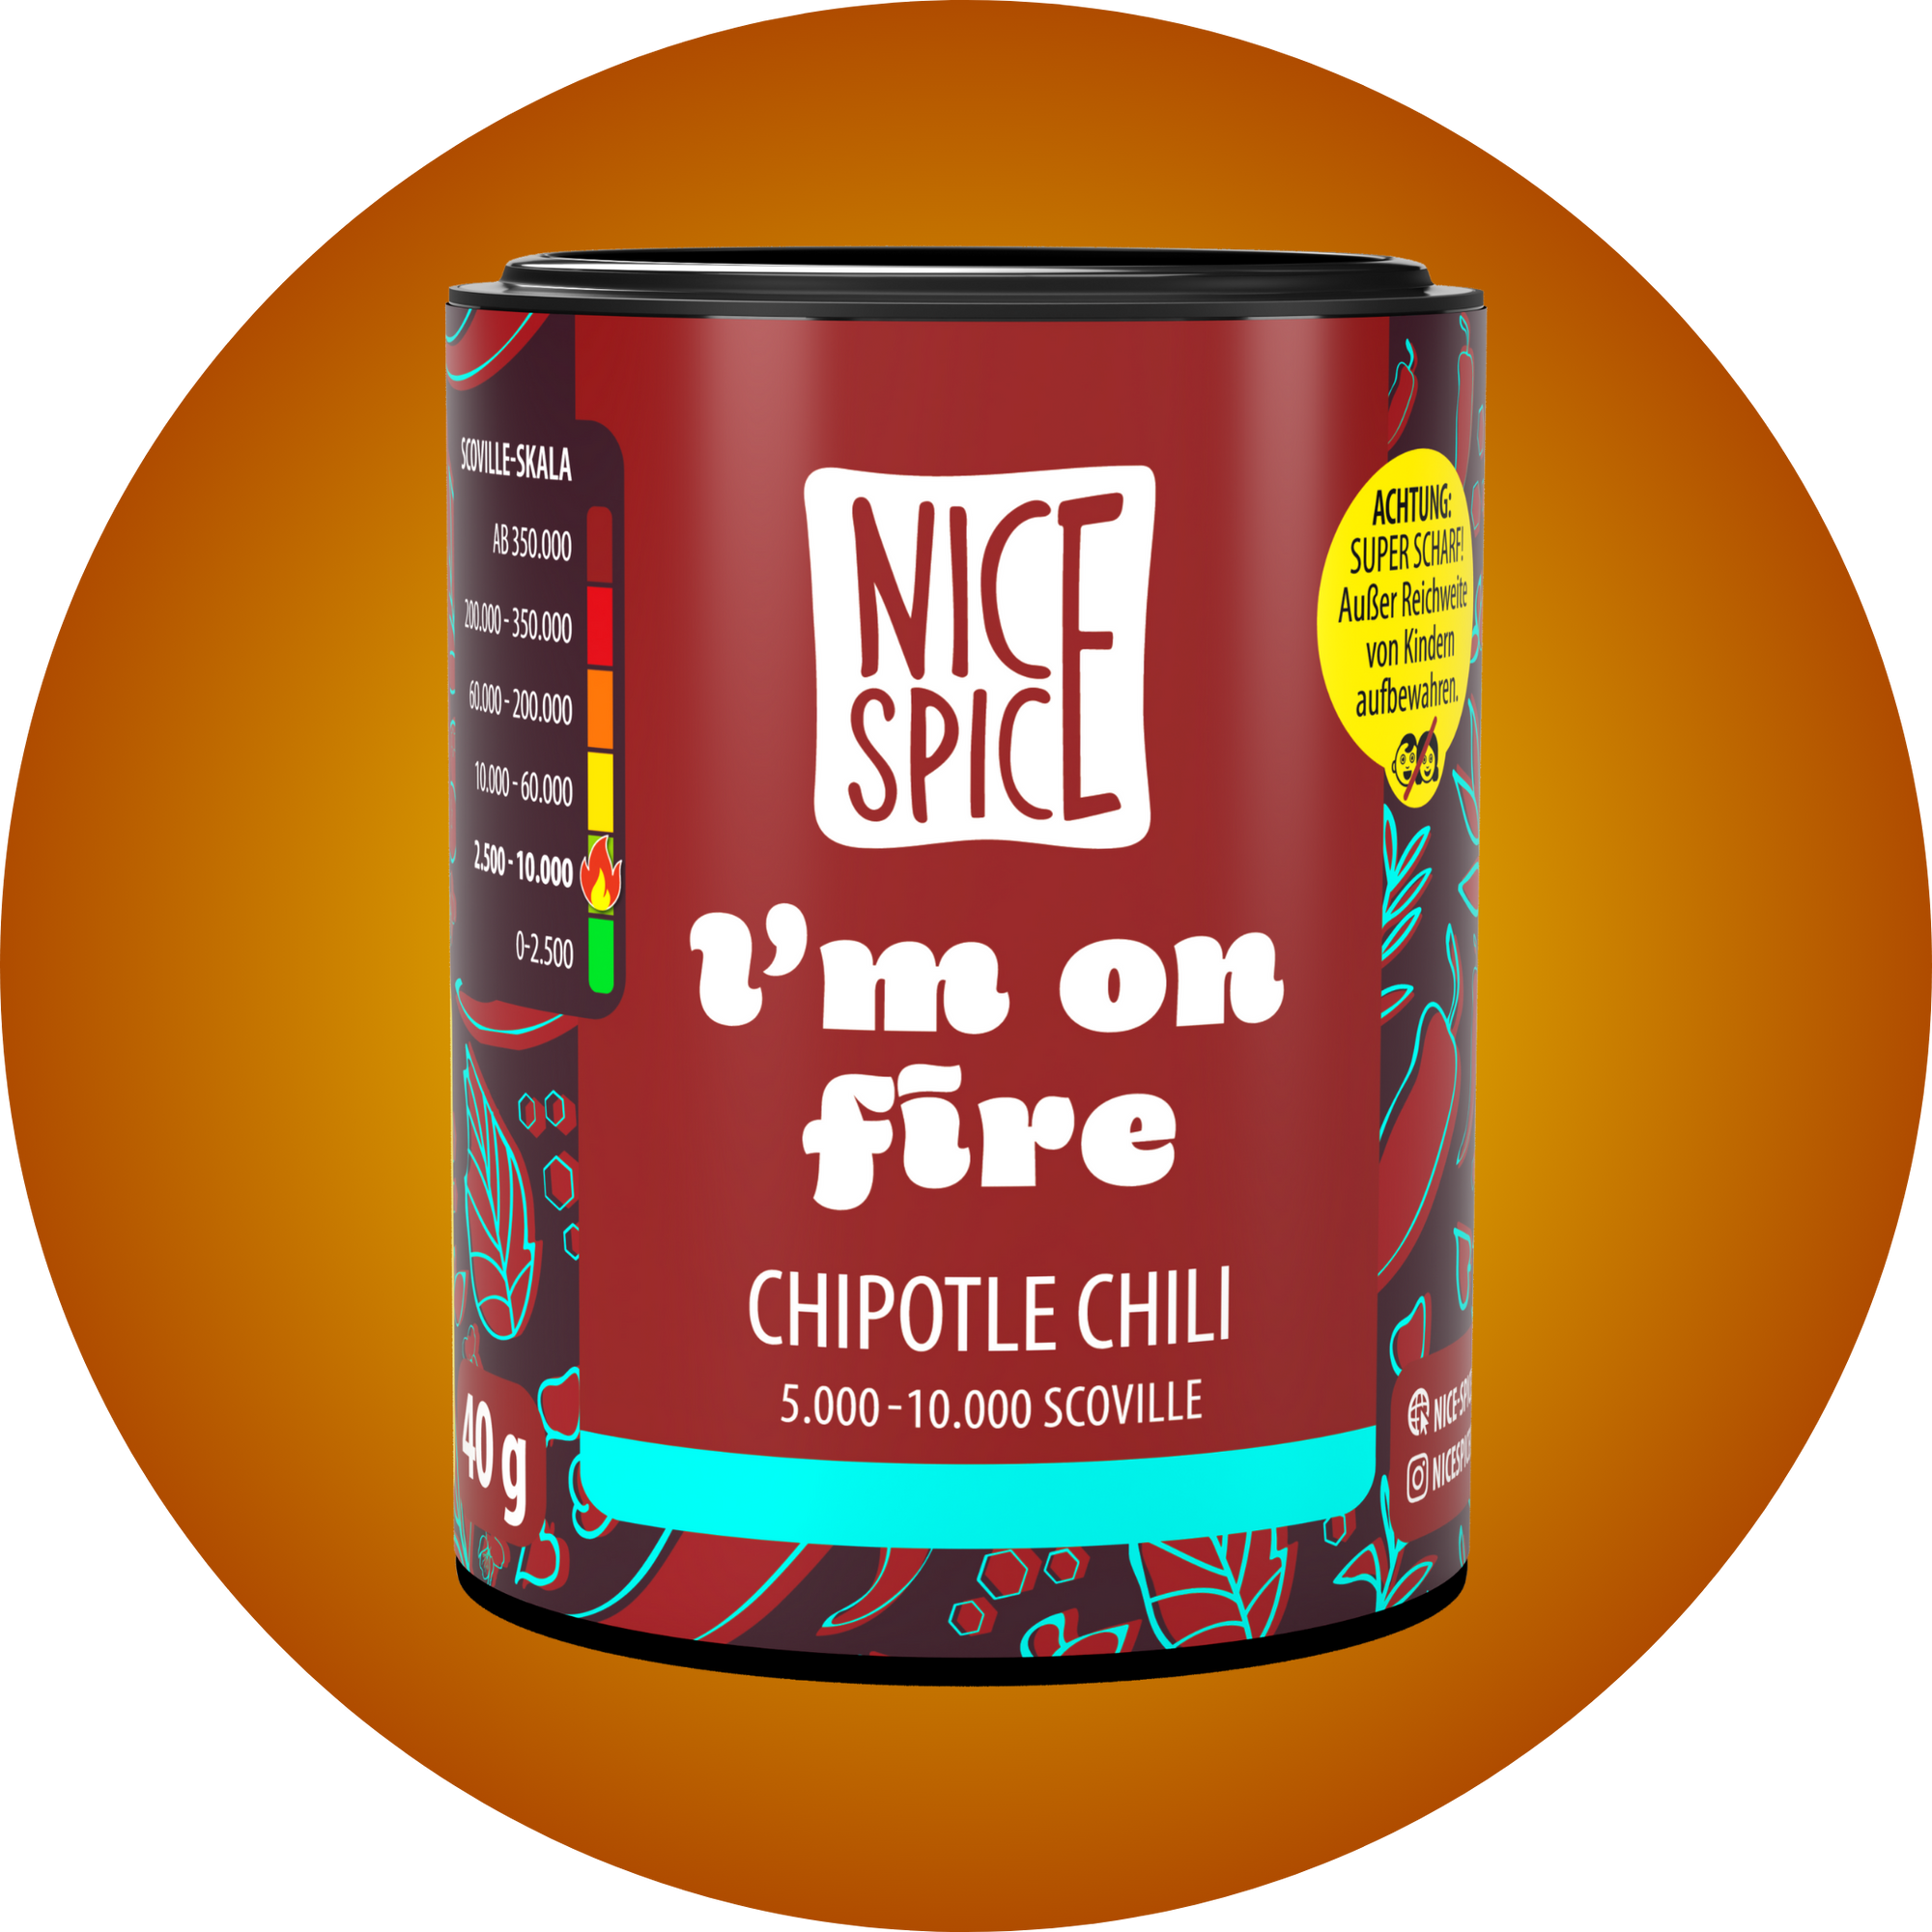 NICE SPICE Chipotle Chiliflocken in dunkelroter zylinderförmiger Dose in verspieltem Design vor orangem Hintergrund